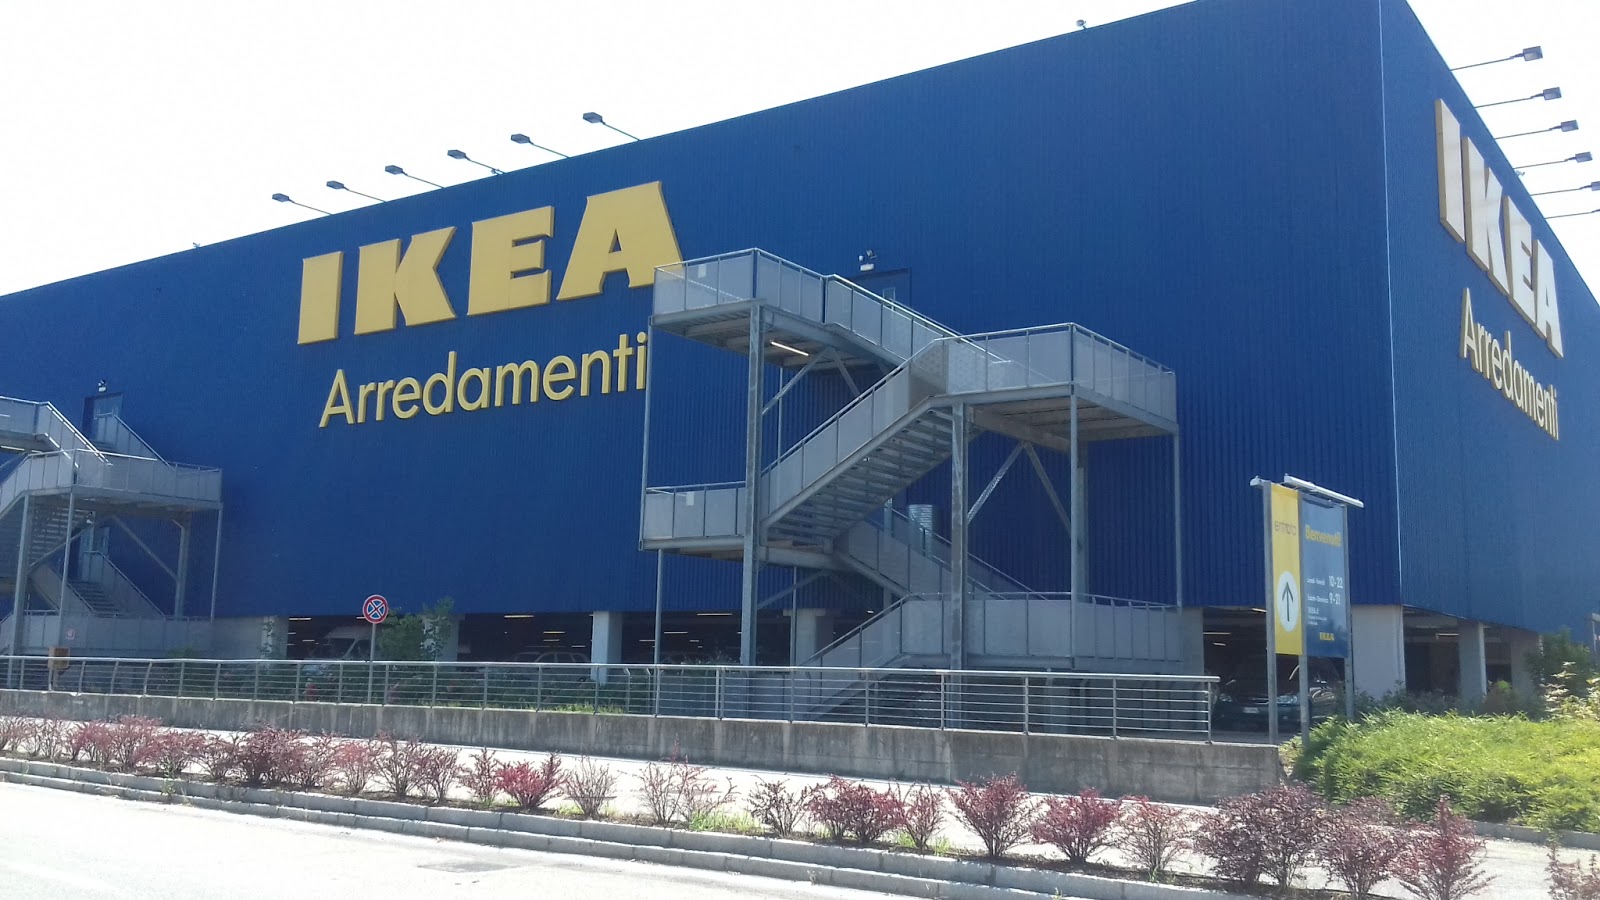 I supermercati IKEA offrono diverse opportunità per diverse località, dai un'occhiata e scopri come registrarti